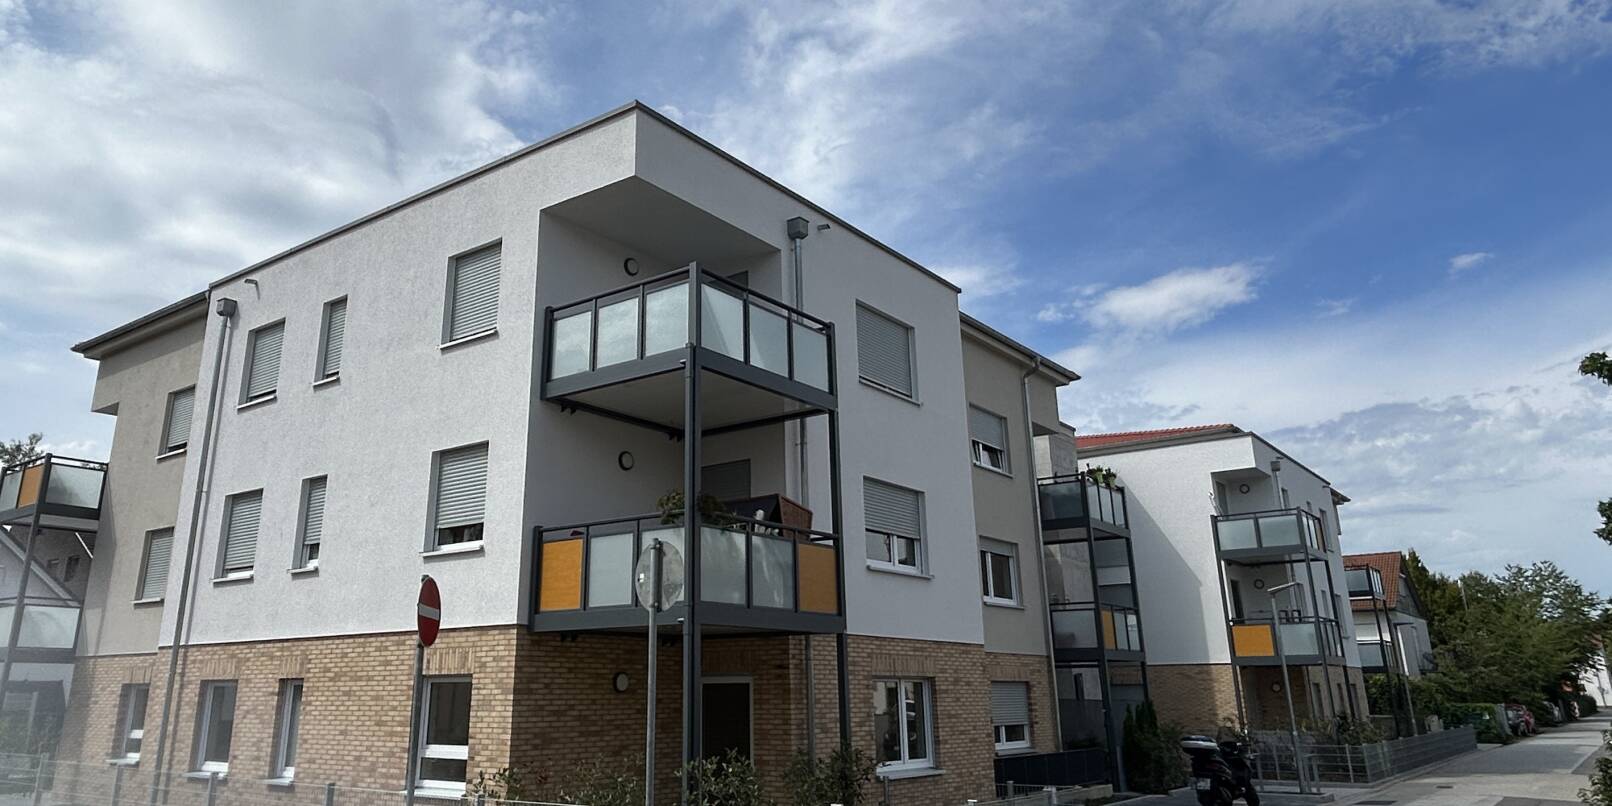 24 Wohnungen hat die Baugenossenschaft Weinheim in der Körnerstraße 1 errichtet. Vor wenigen Wochen konnten die Mieter einziehen.